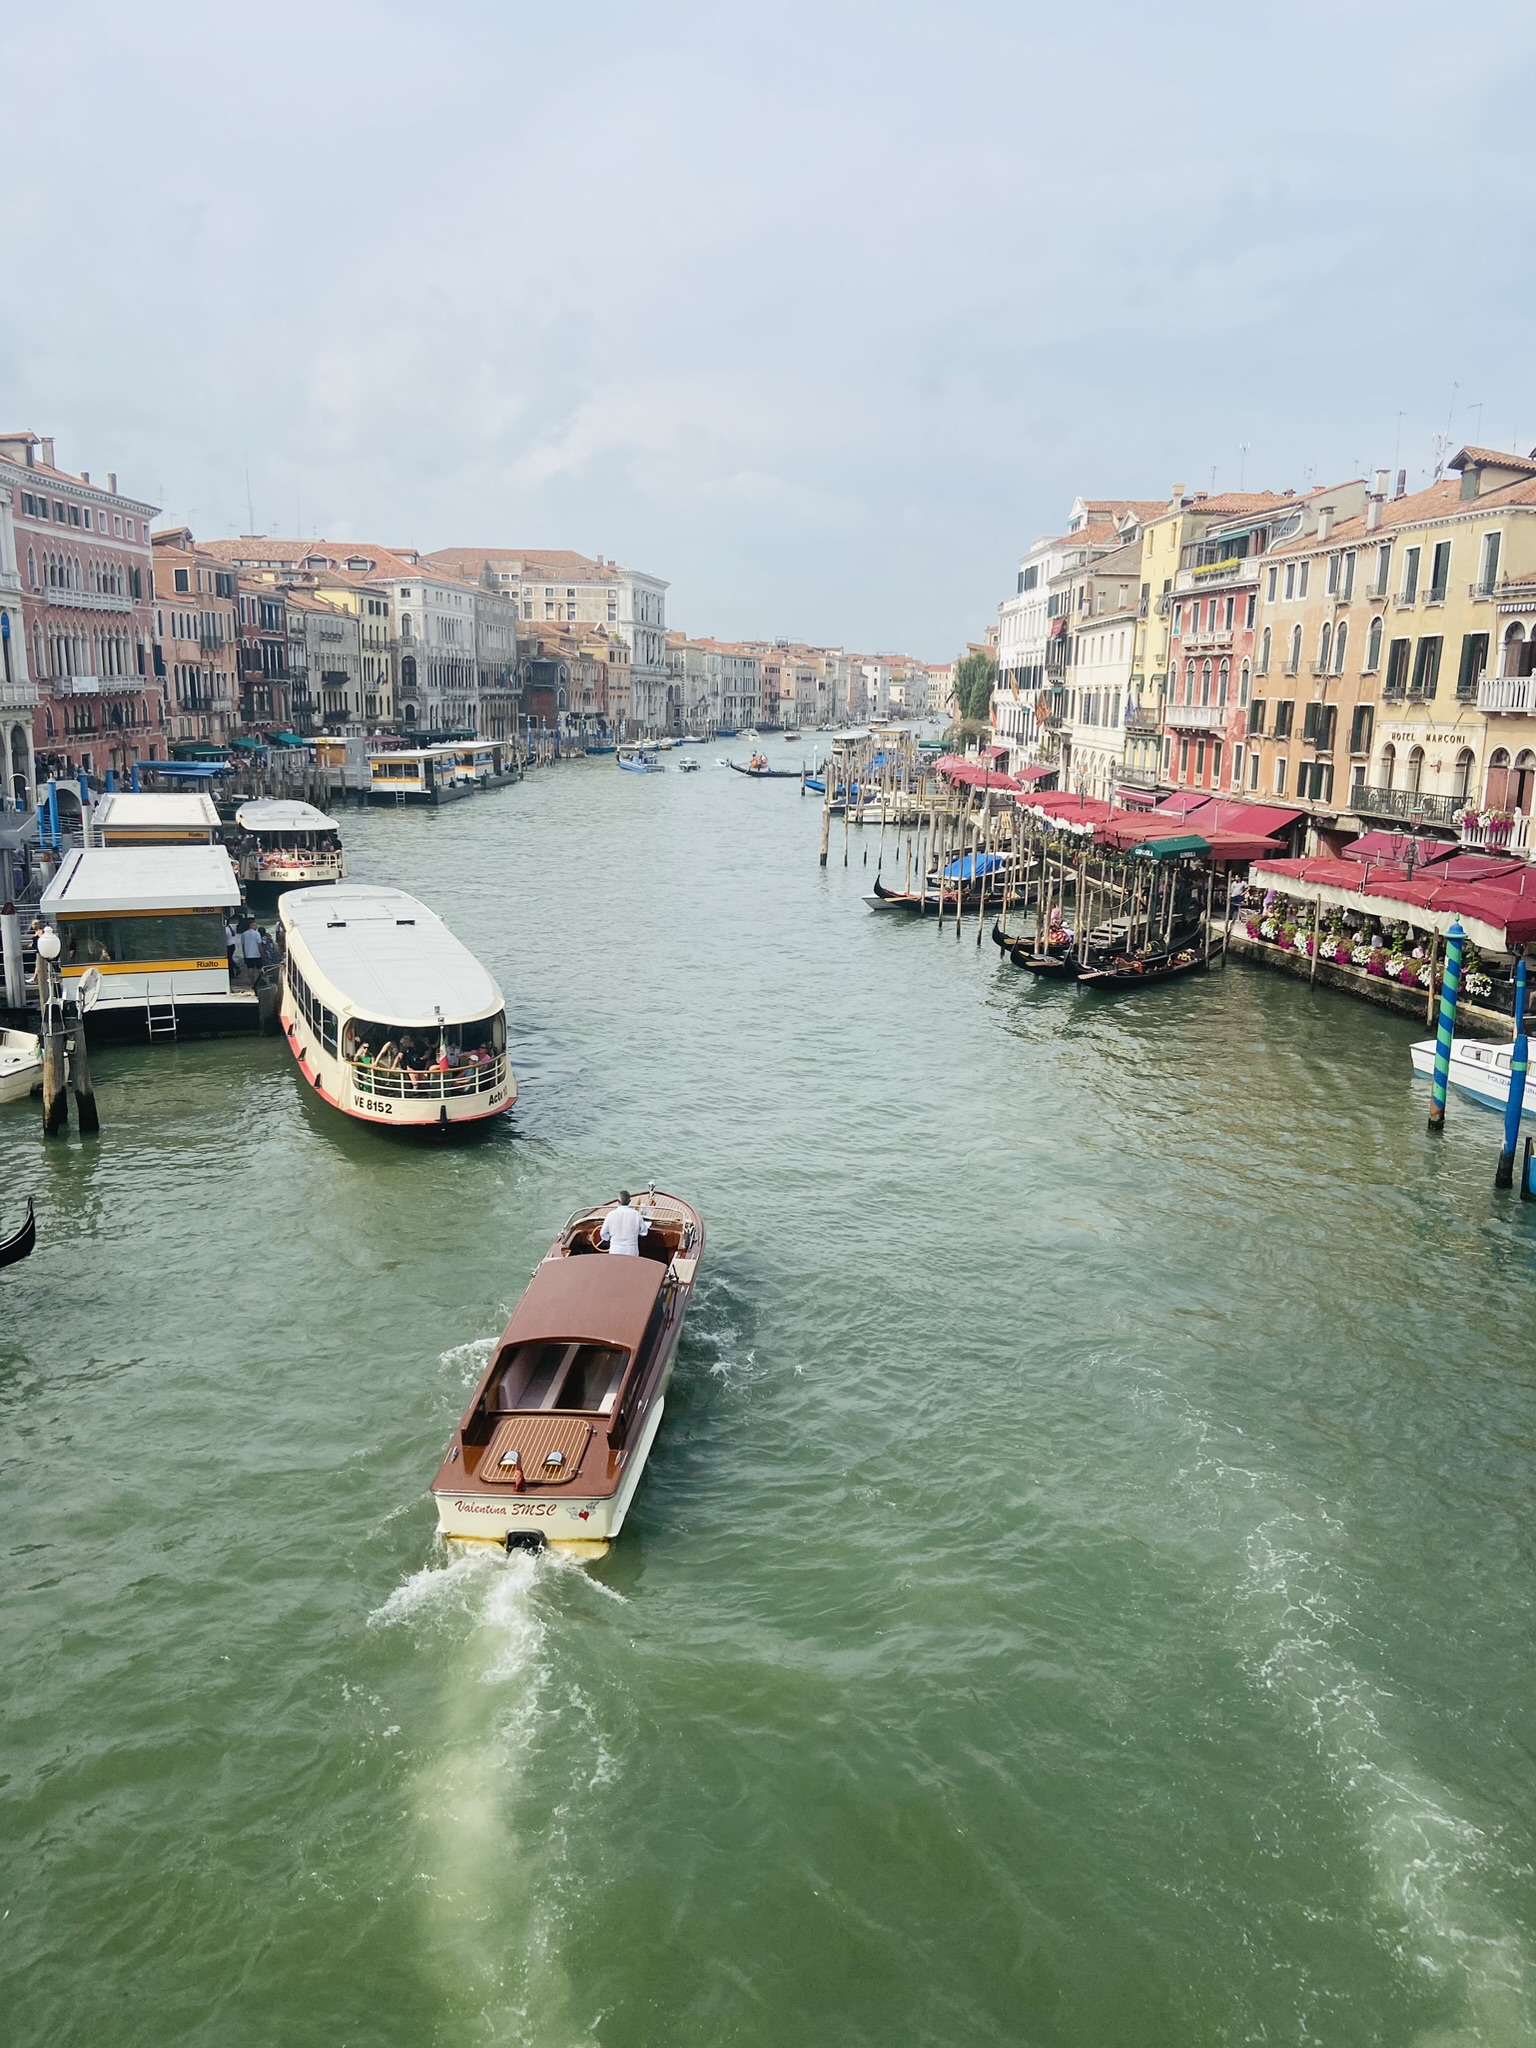 βενετία εκδρομή καλοκαίρι αδριατική οικογένεια 3ήμερο κανάλια γόνδολες κρουαζιέρα ιταλία